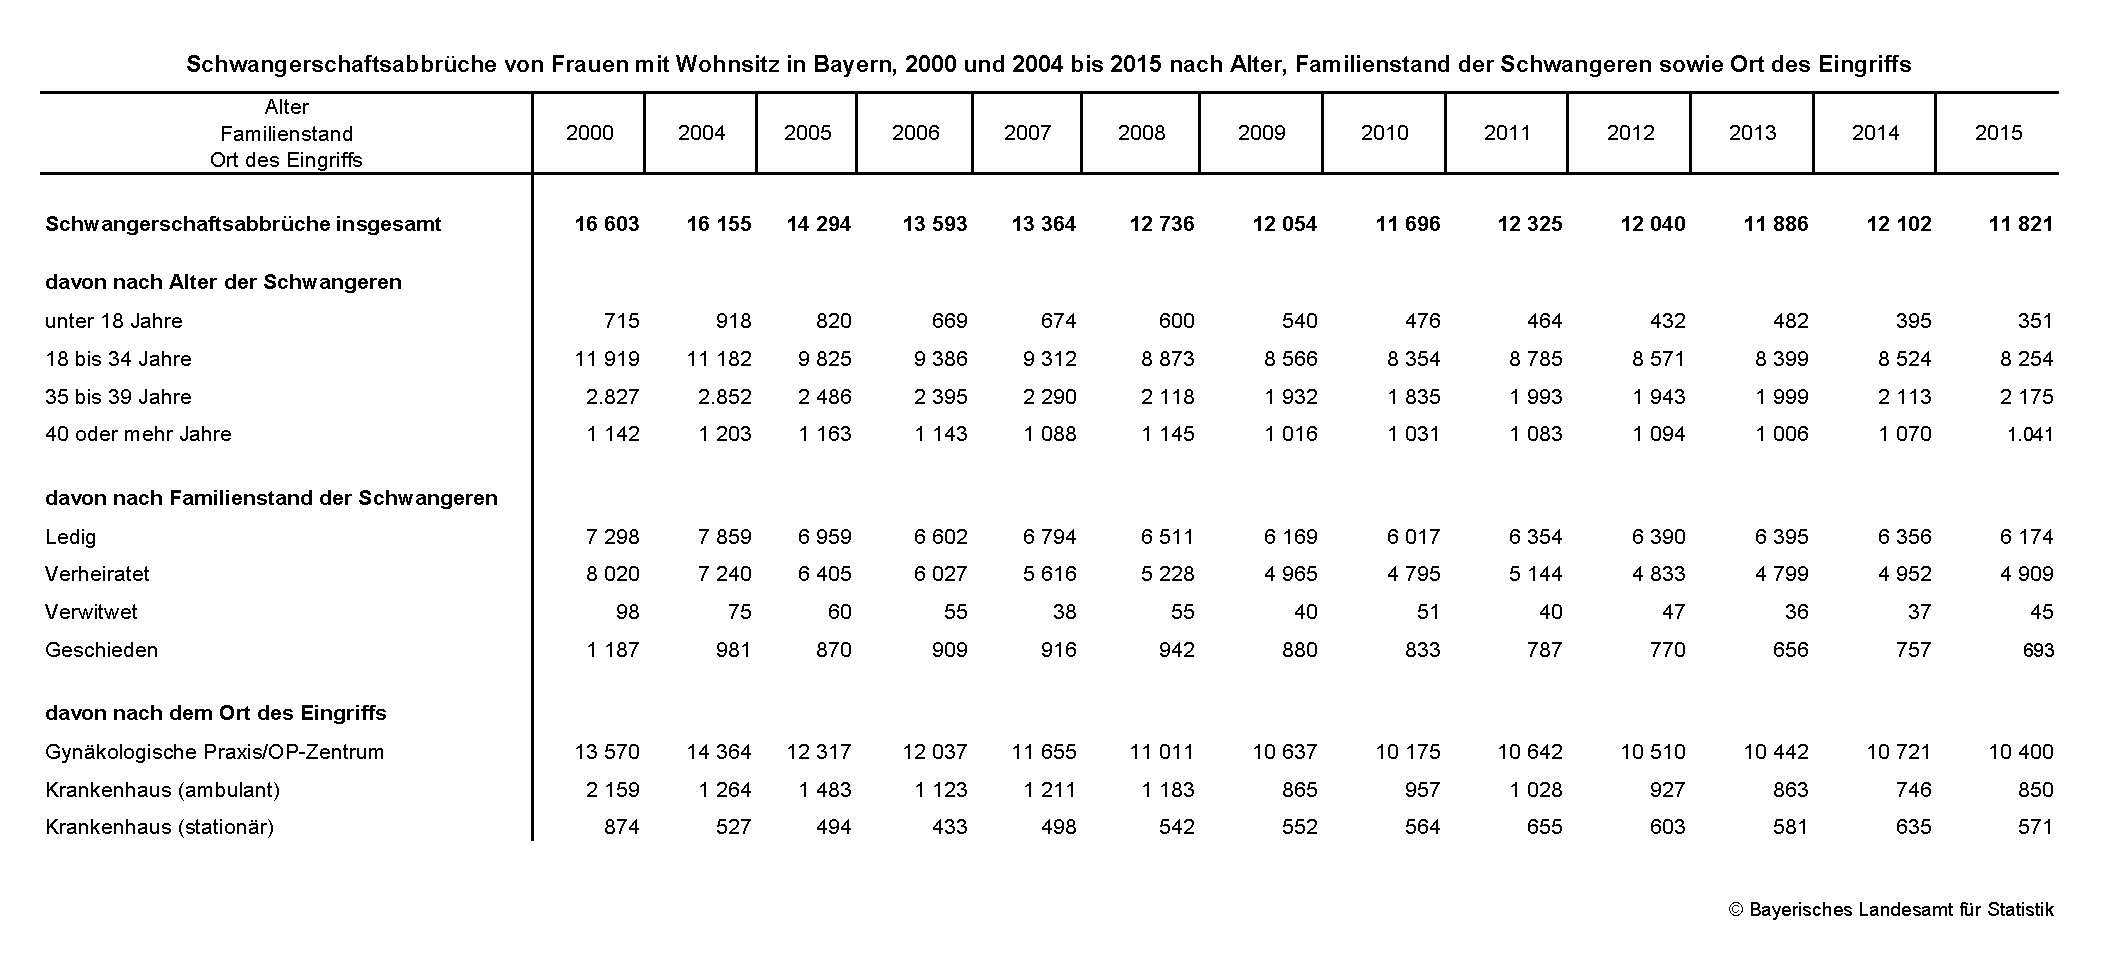 Schwangerschaftsabbrüche von Frauen mit Wohnsitz in Bayern, 2000 und 2004 bis 2015 nach Alter, Familienstand der Schwangeren sowie Ort des Eingriffs